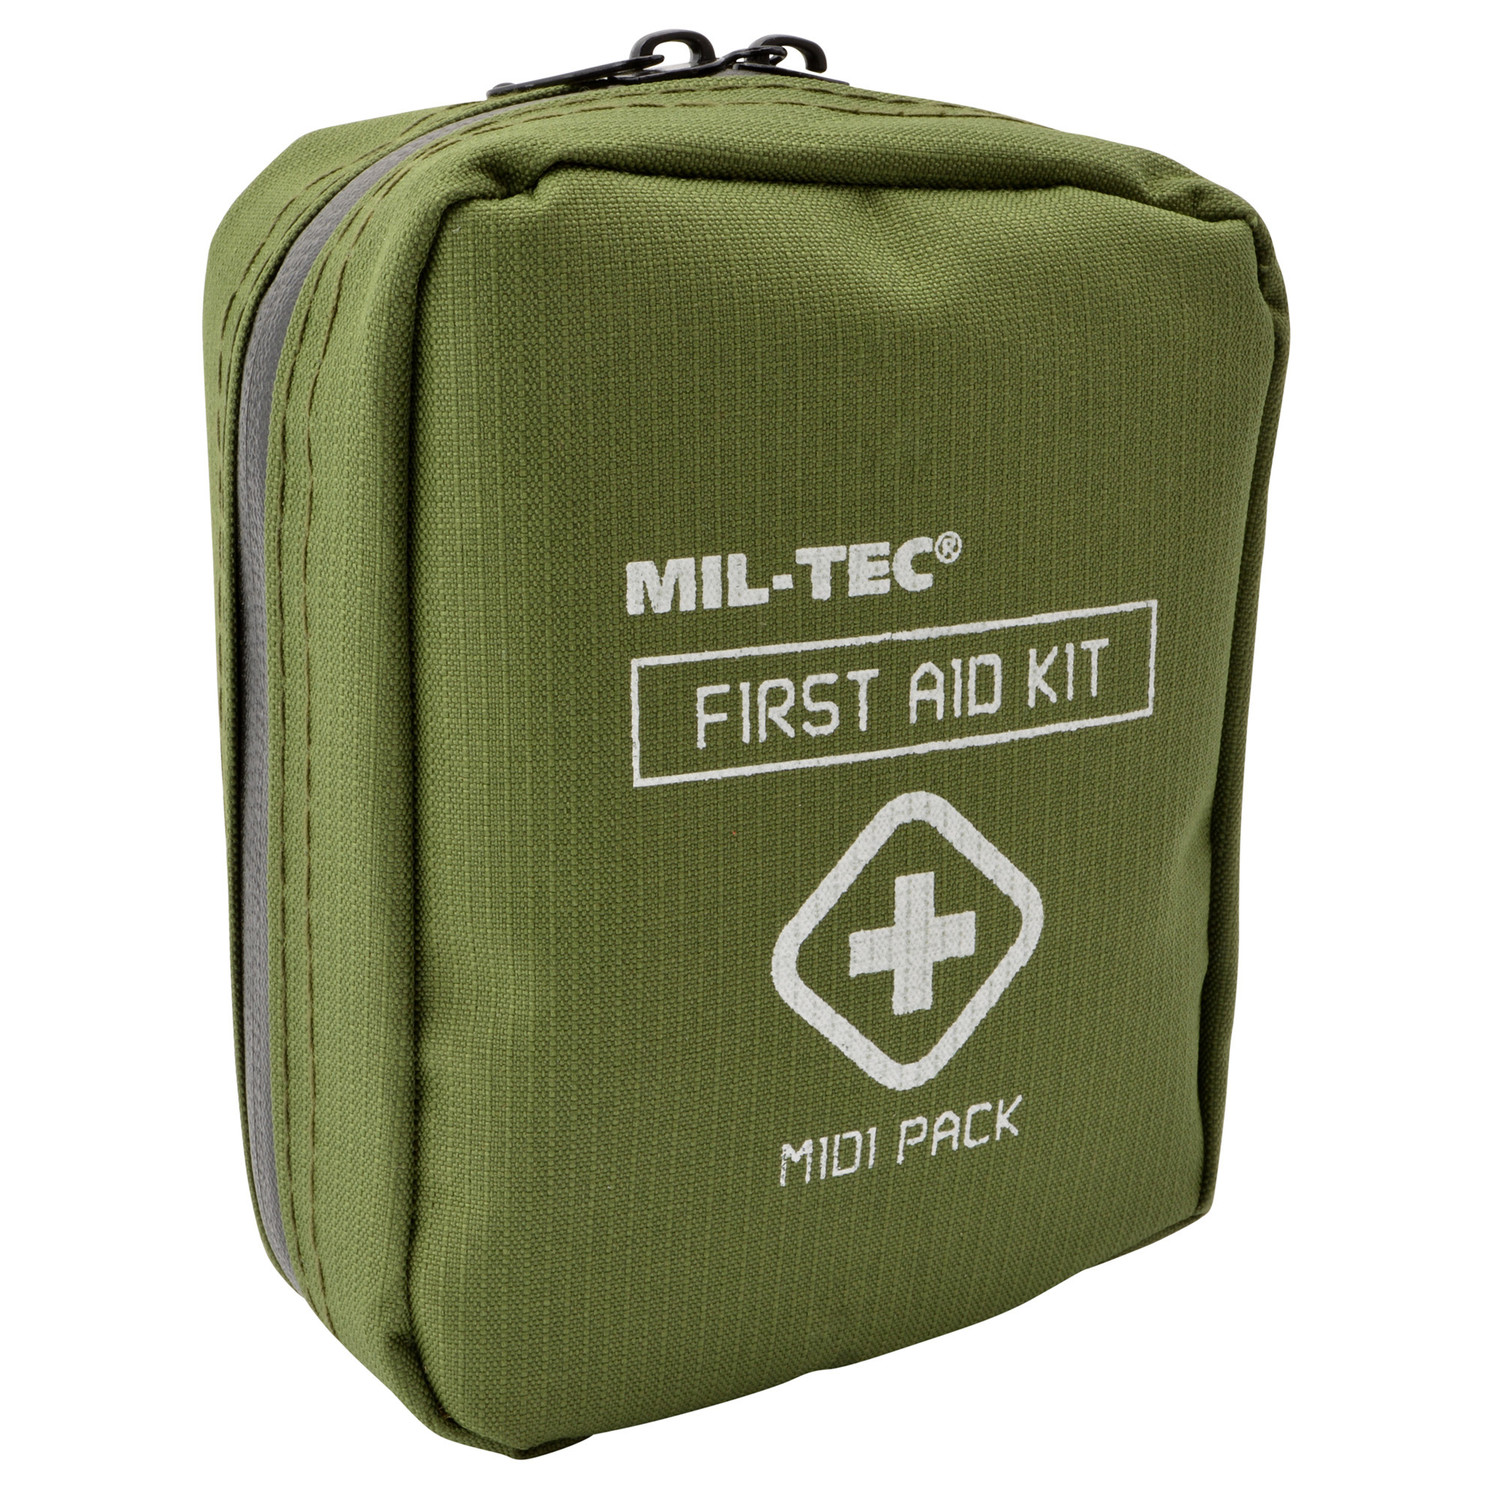 Mil-Tec First Aid Kit Midi Pack (Groß) in Oliv - kompakte Reißverschlusstasche mit Erste Hilfe Material